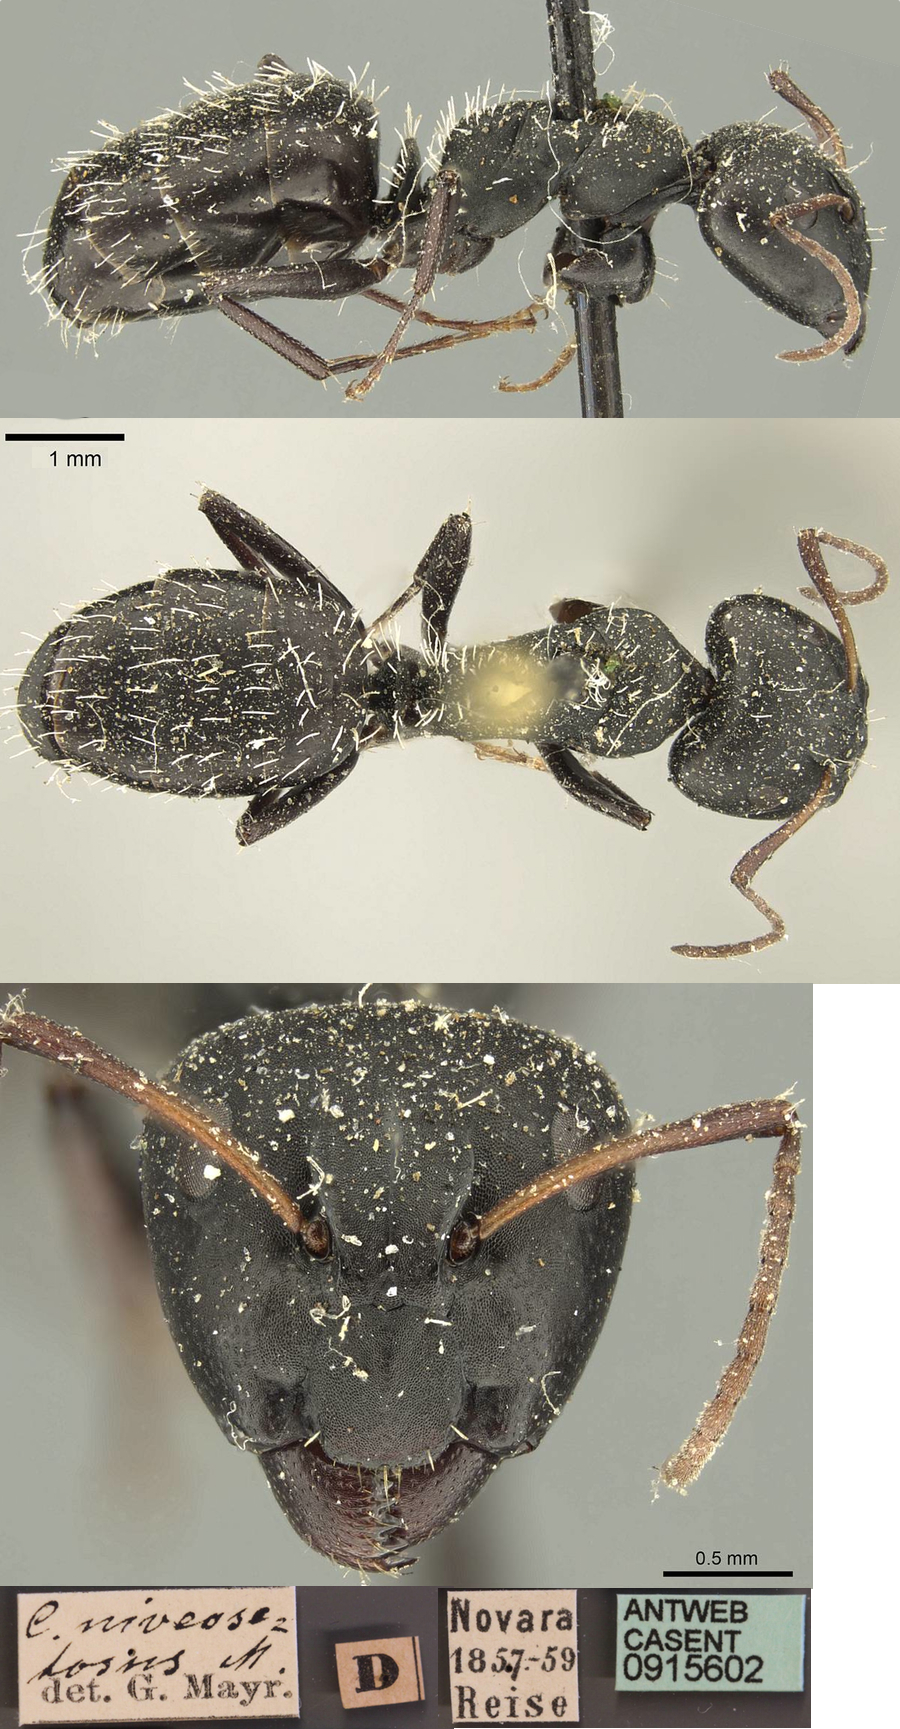 Camponotus niveosetosus major